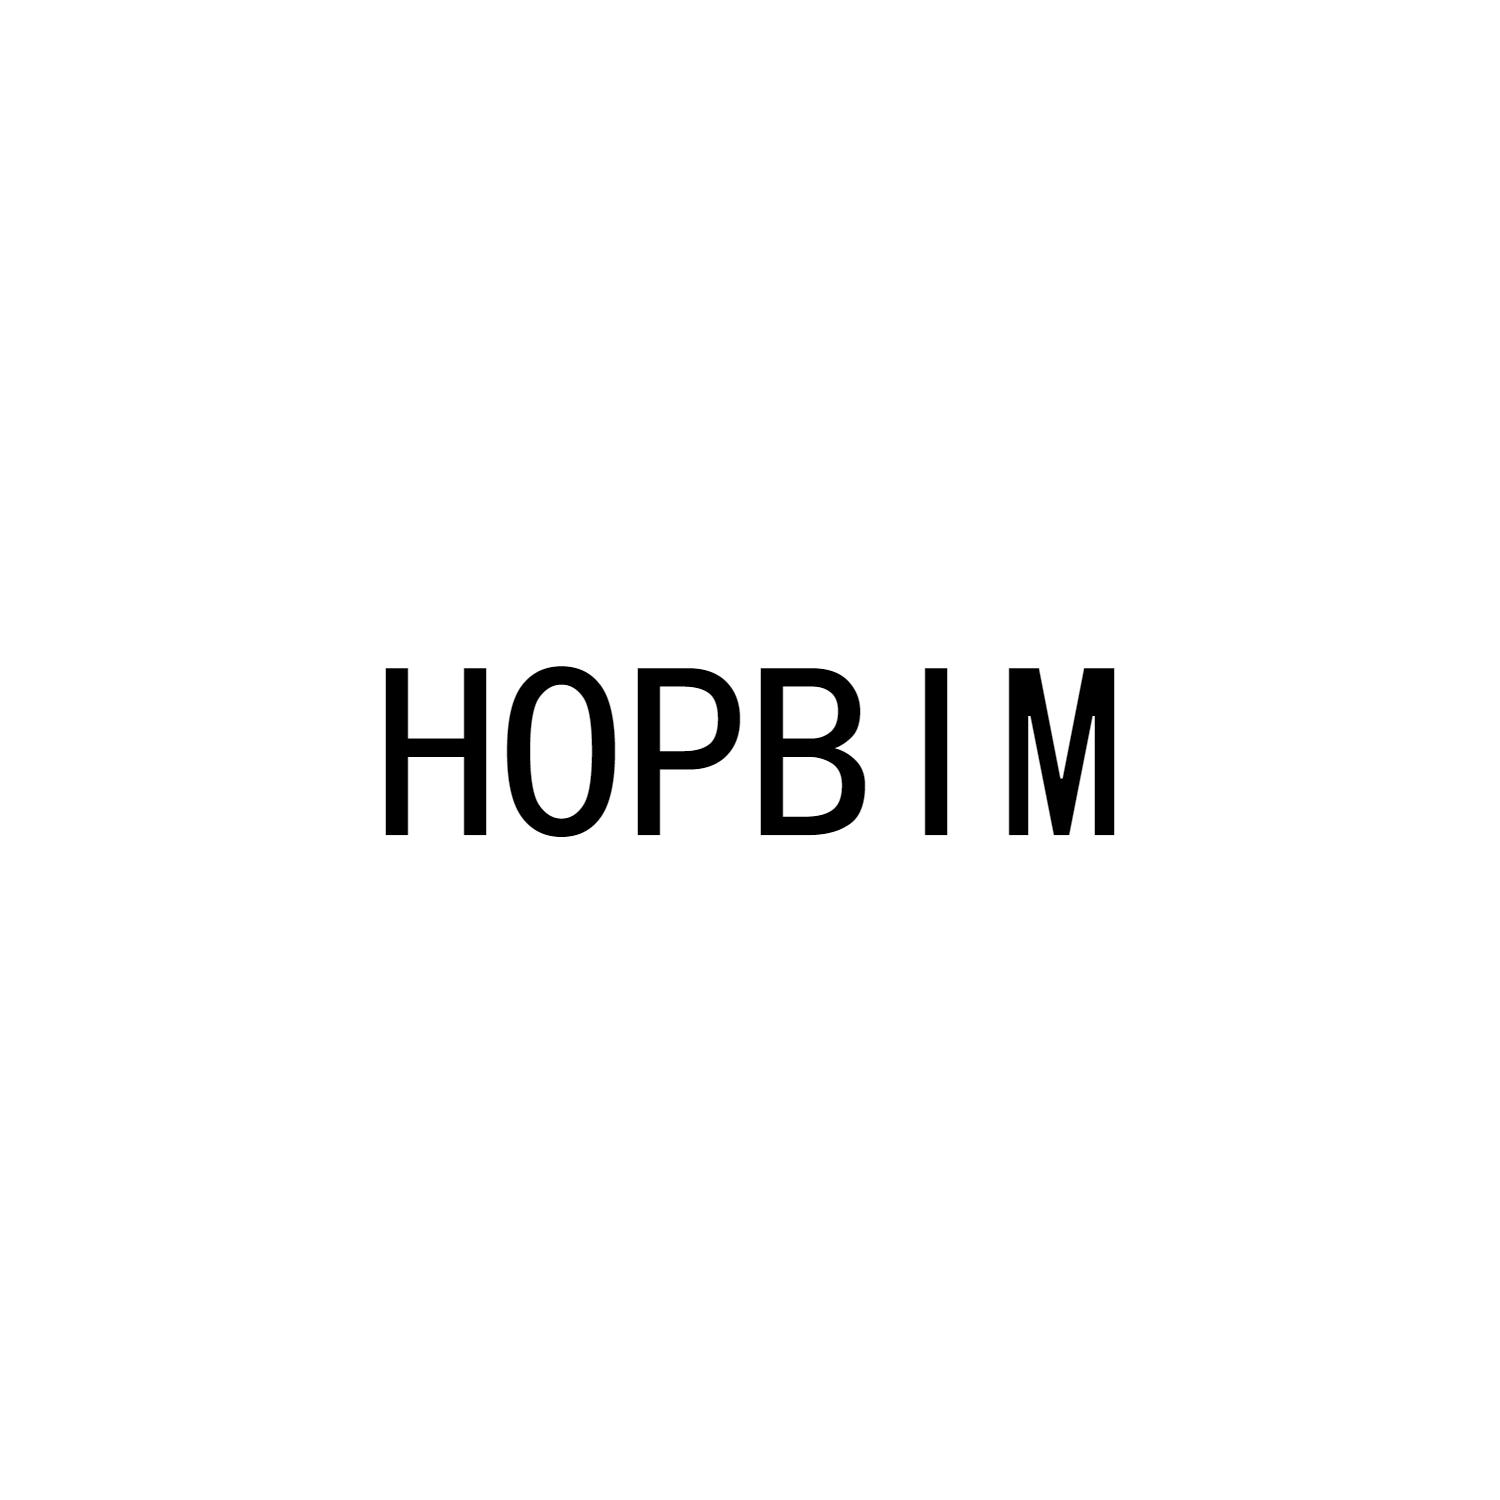 HOPBIM